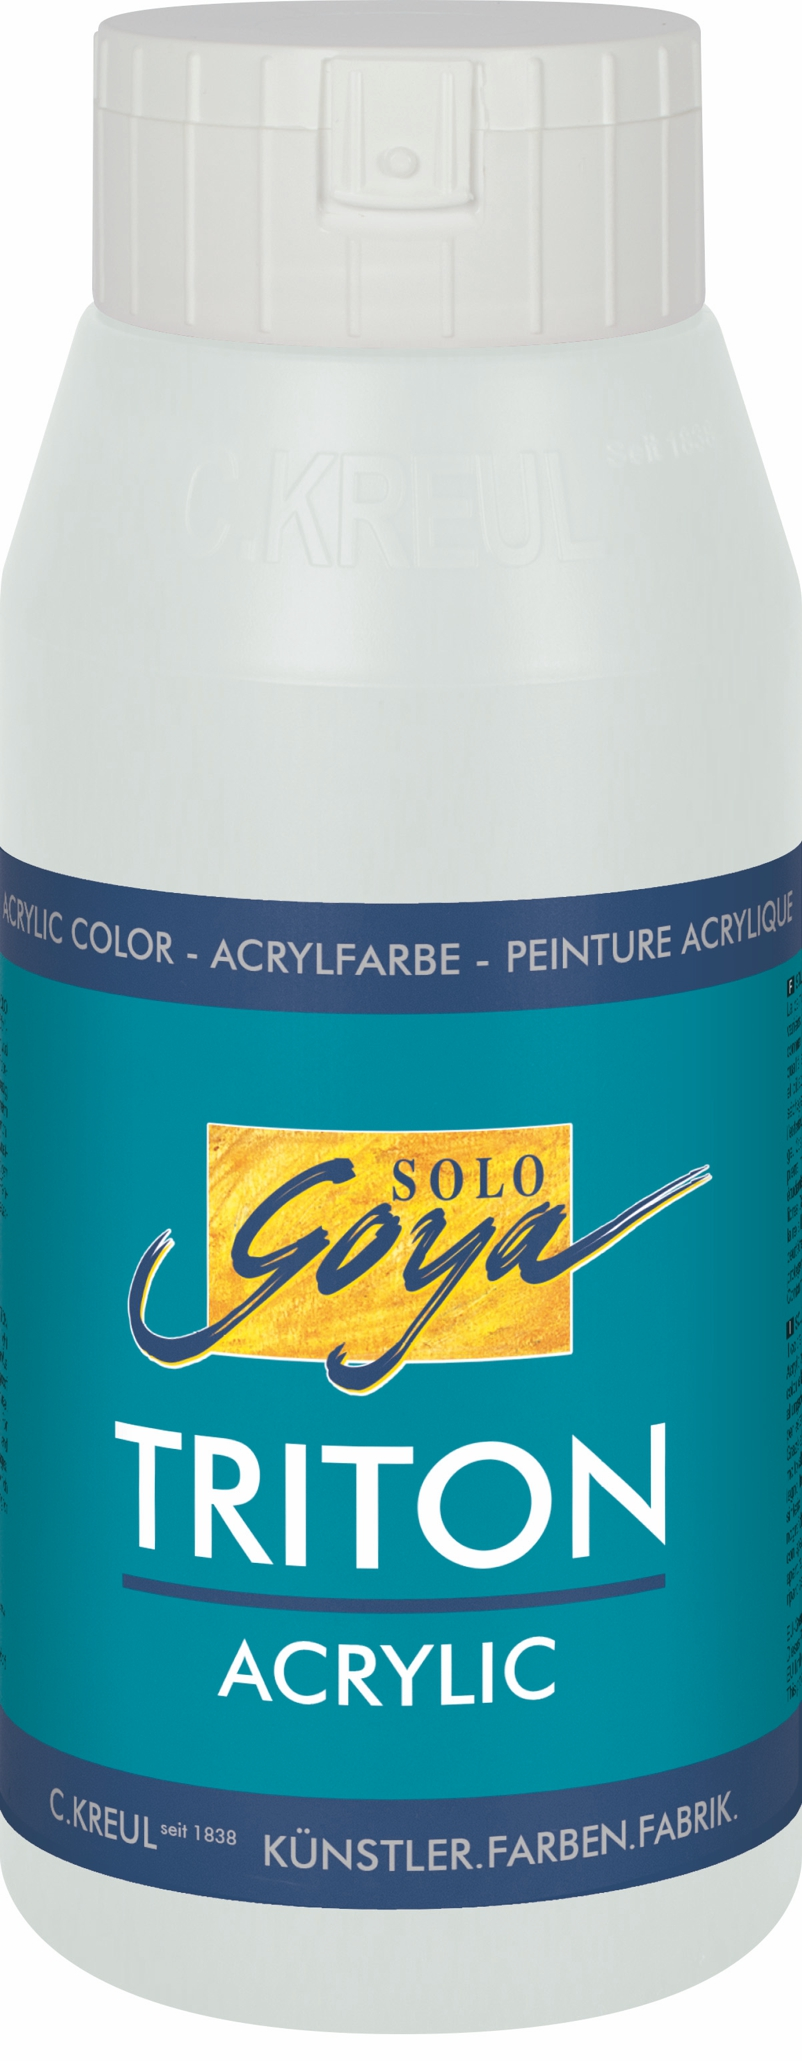 Goya Triton Acrylfarbe 750ml PG 4 metallic